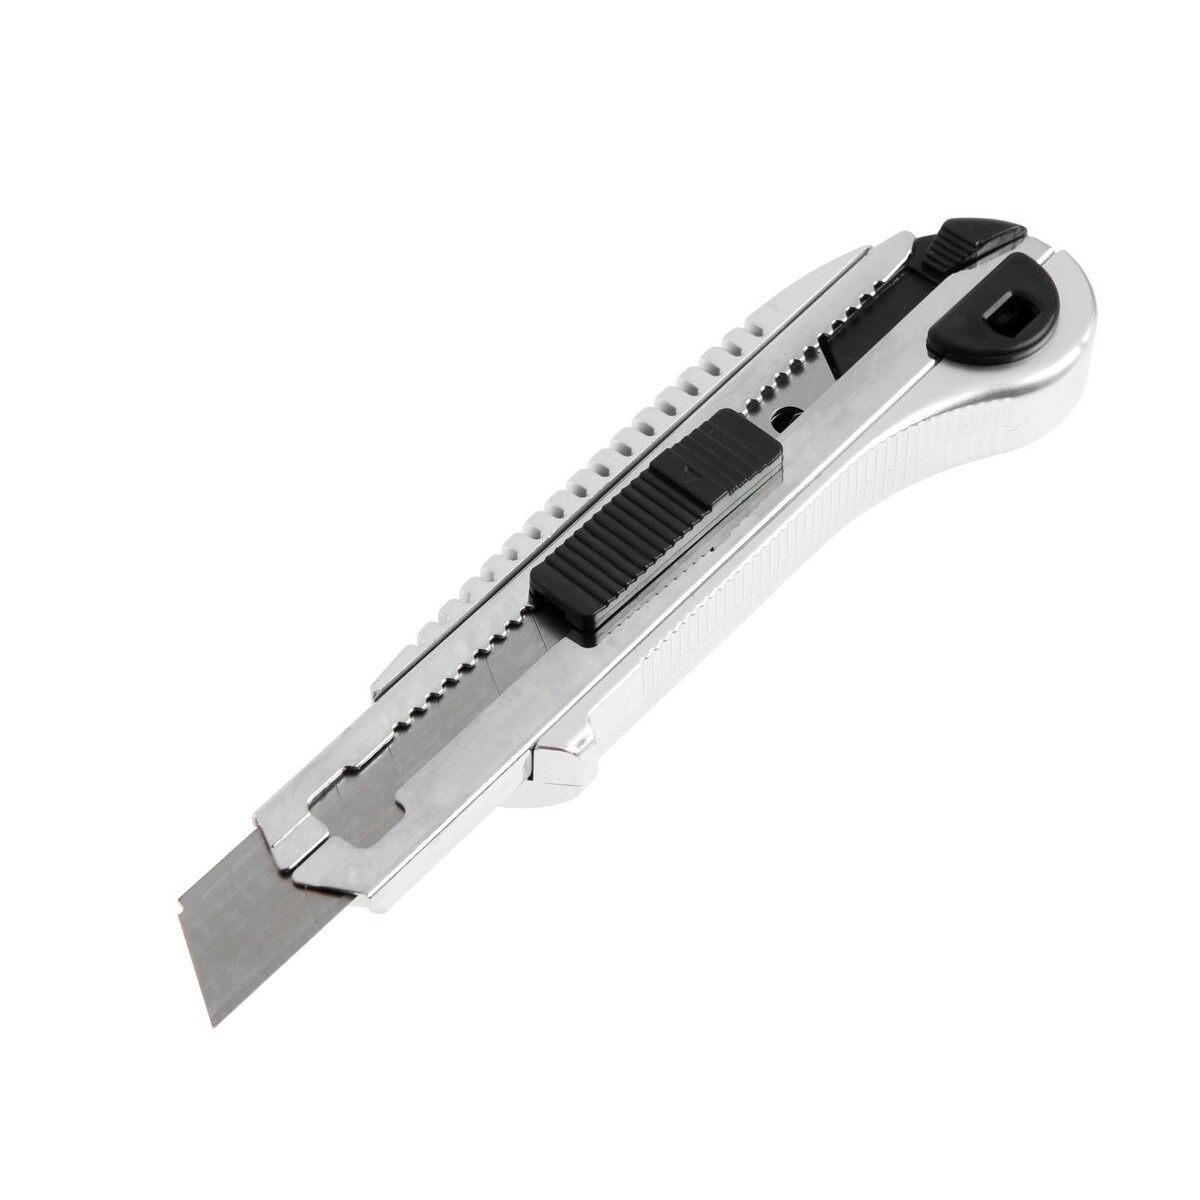 Нож универсальный тундра, усиленный, металлический, квадратный фиксатор, 18 мм нож универсальный тундра прорезиненный металлический корпус винтовой фиксатор 18 мм